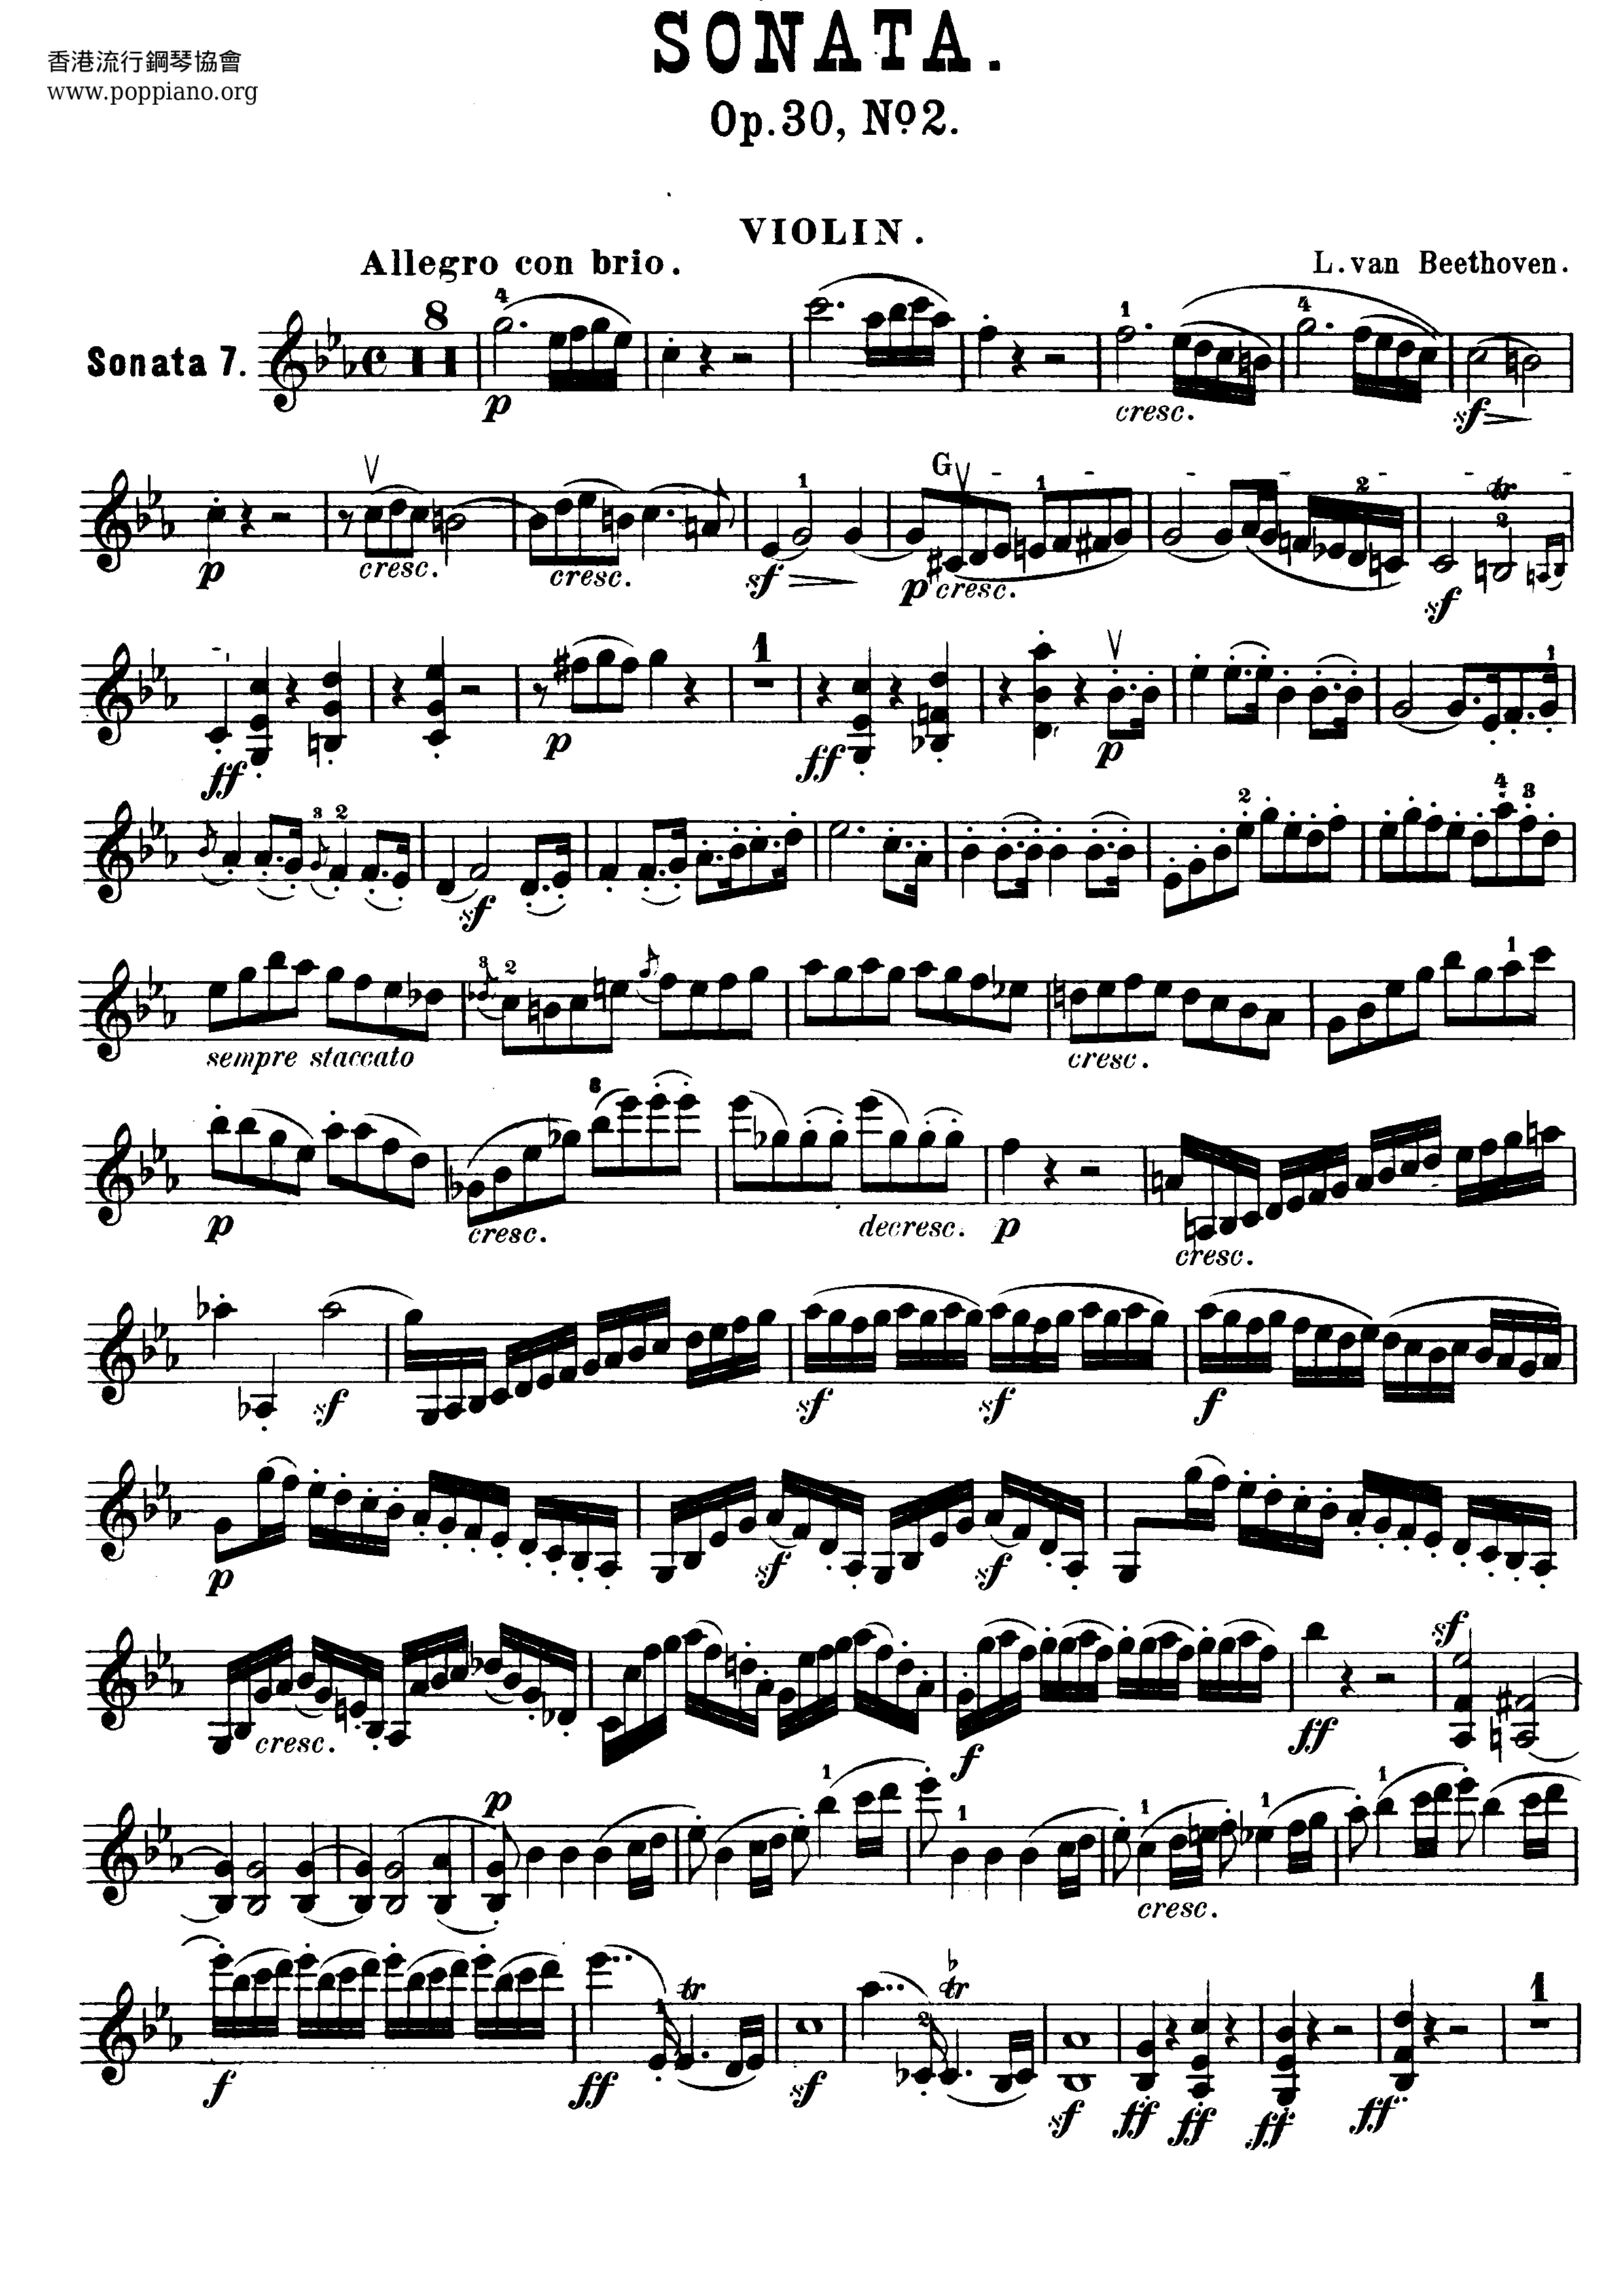 Violin Sonata No. 7 In C Minor, Op. 30, No. 2 Score